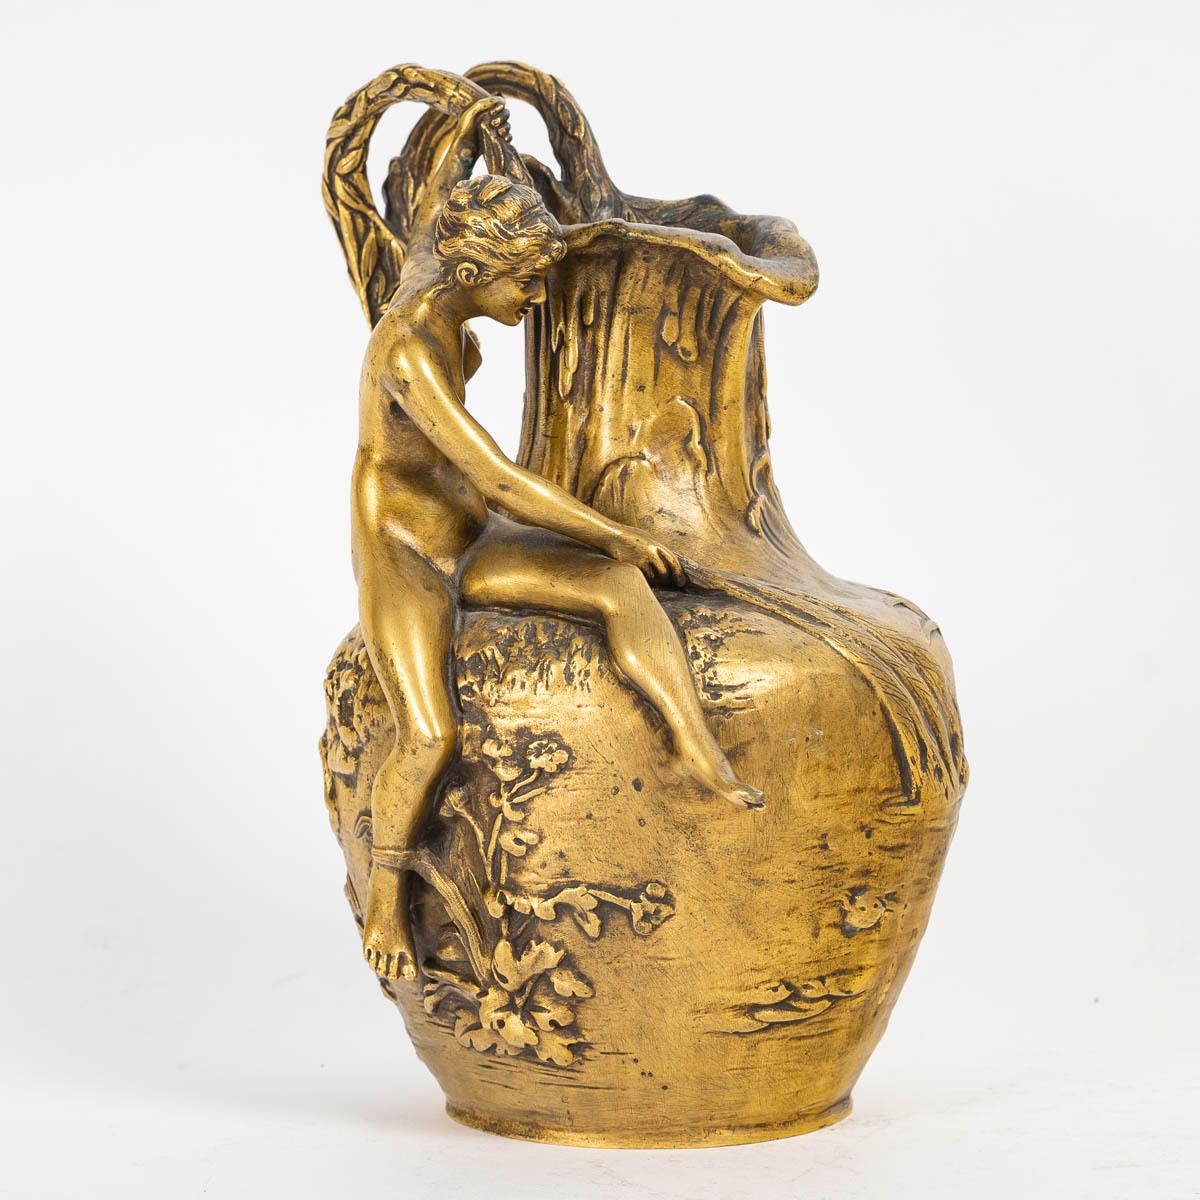 Art Nouveau vase, jug, signed A, Vibert, circa 1900 .

Gilt bronze vase, jug, Art Nouveau style, 1900, signed A, Vibert.
h: 21cm, w: 17cm, d: 13cm